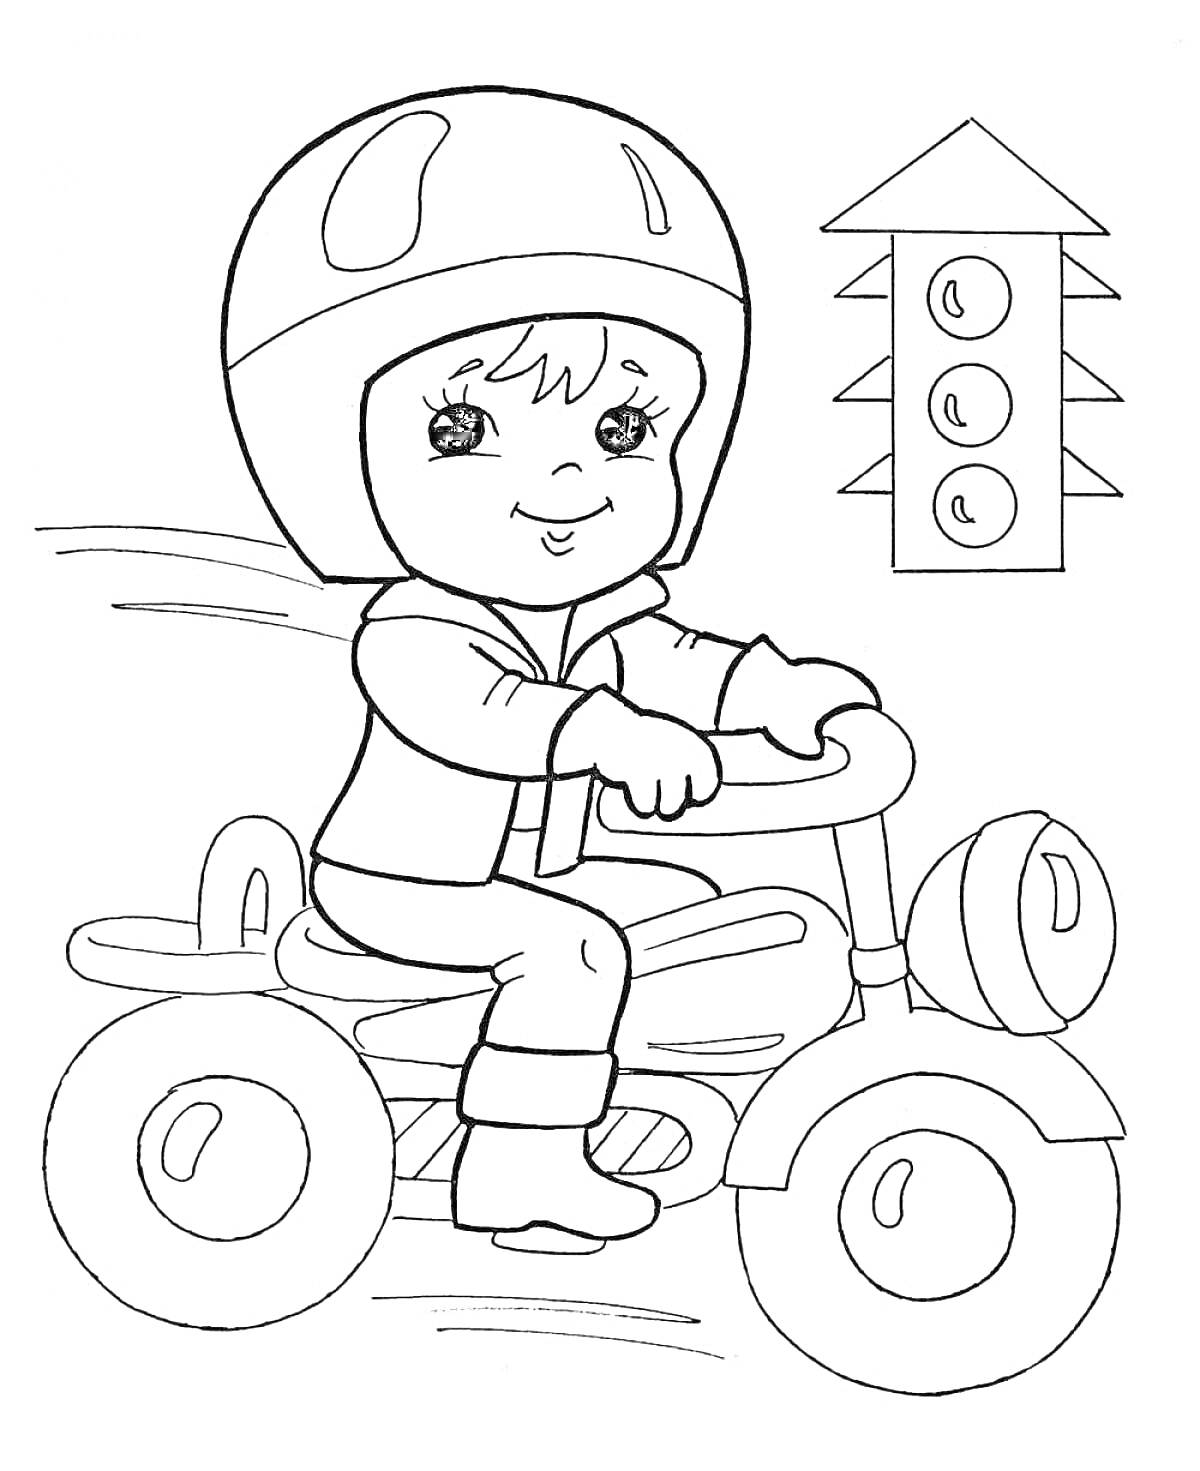 Раскраска Ребёнок на велосипеде с шлемом и светофор